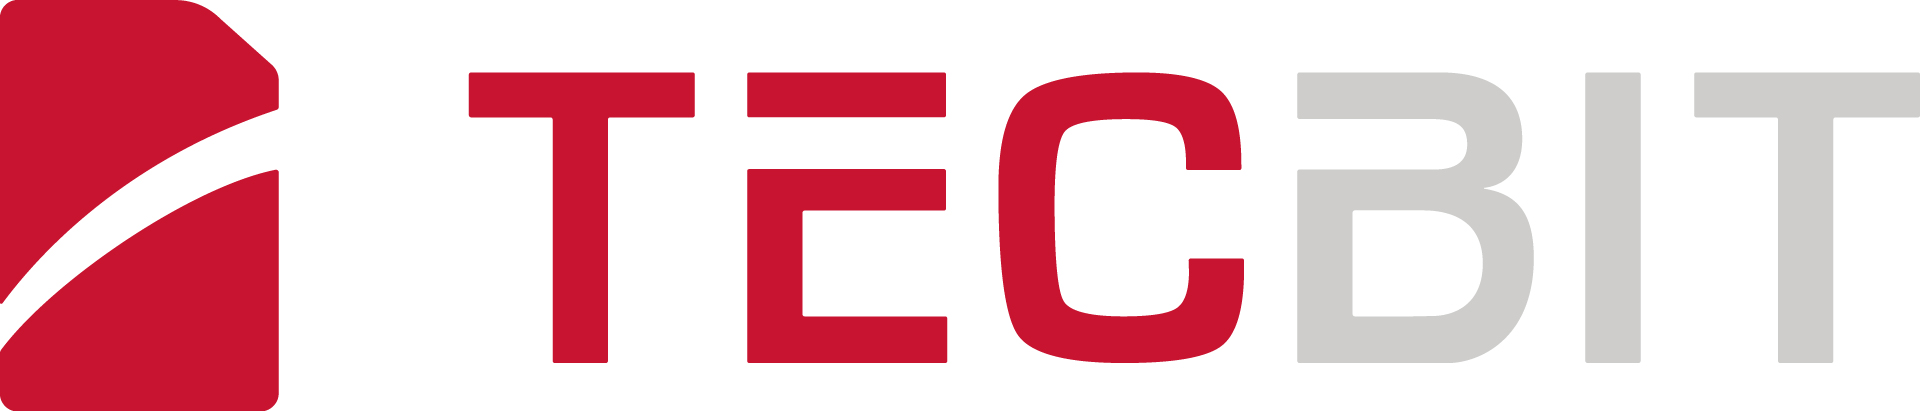 Tecbit Logo Horizontal RGB Full Colour Large 002